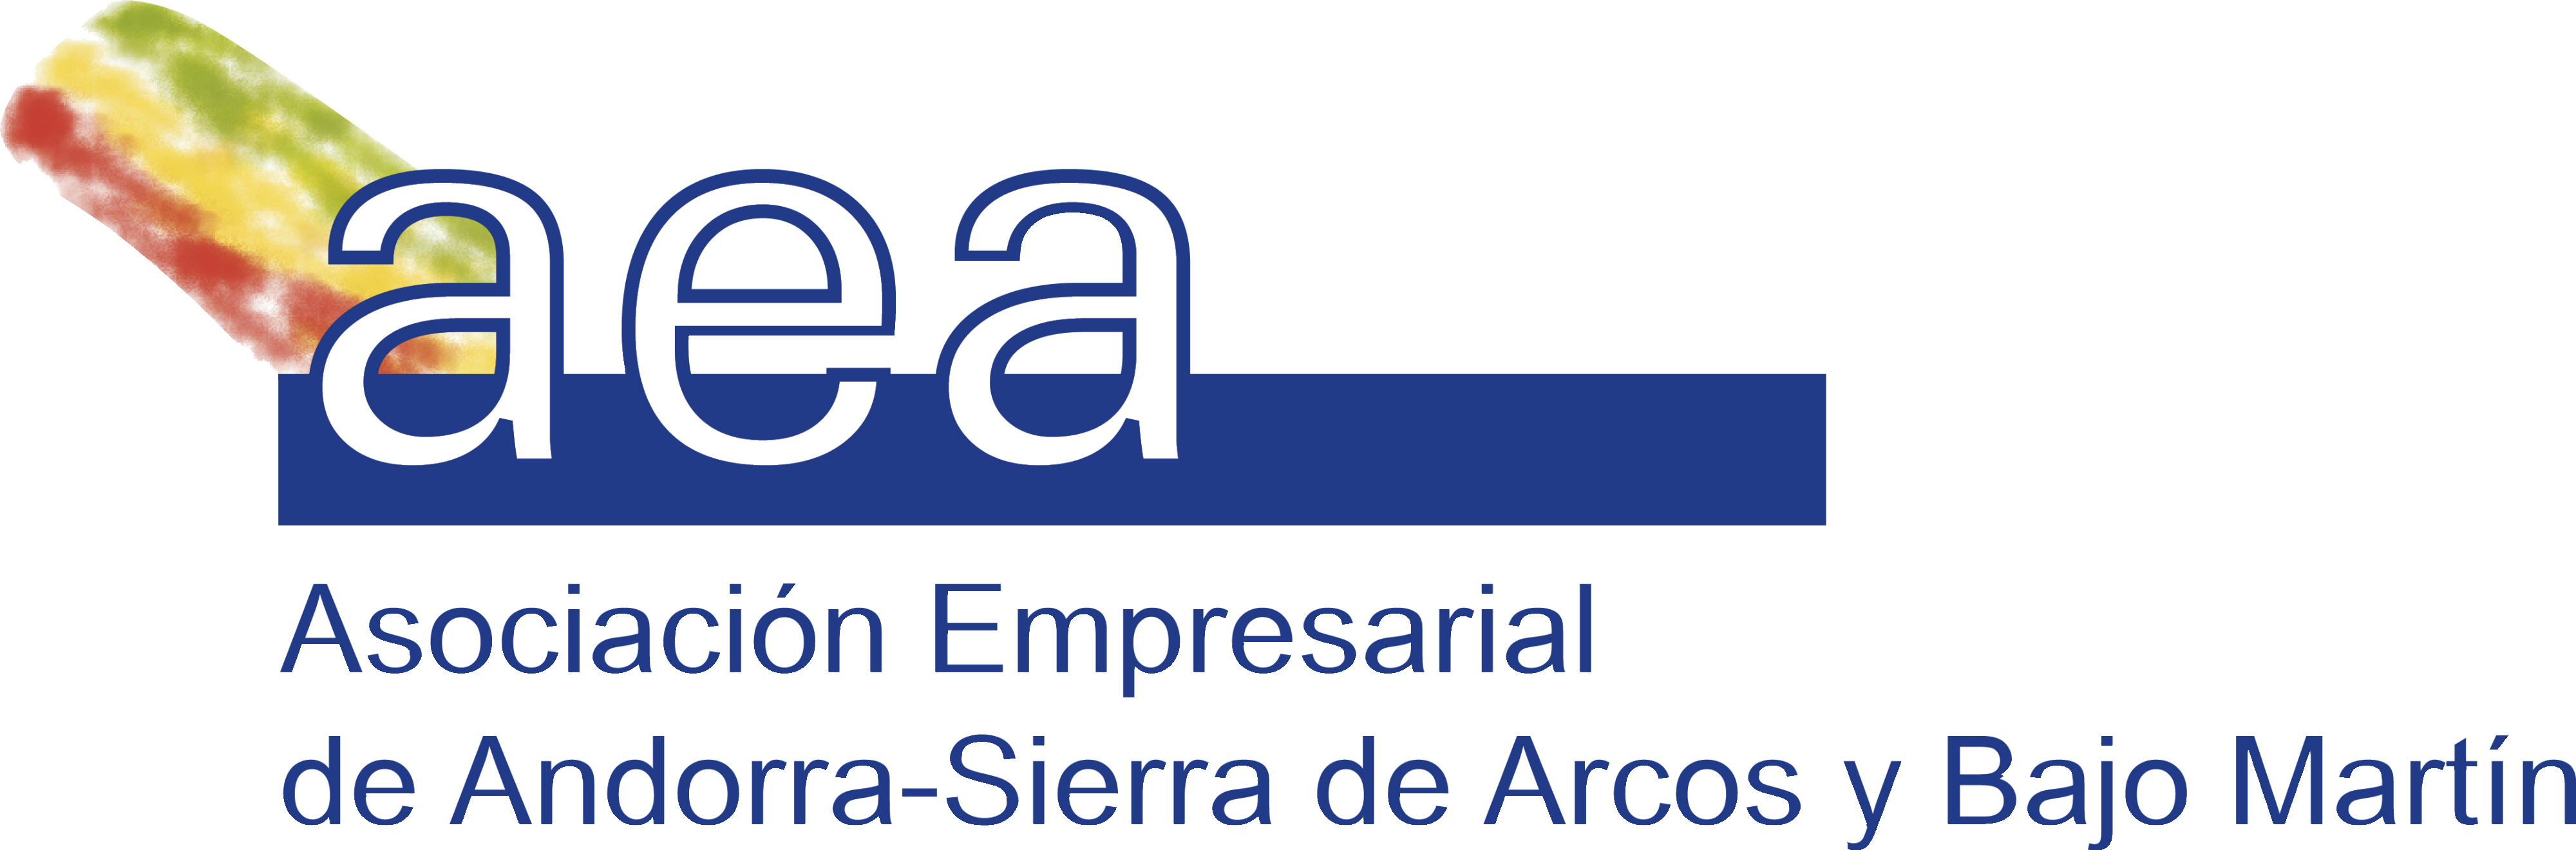 Asociación Empresarial Andorra Sierra de Arcos y Bajo Martín